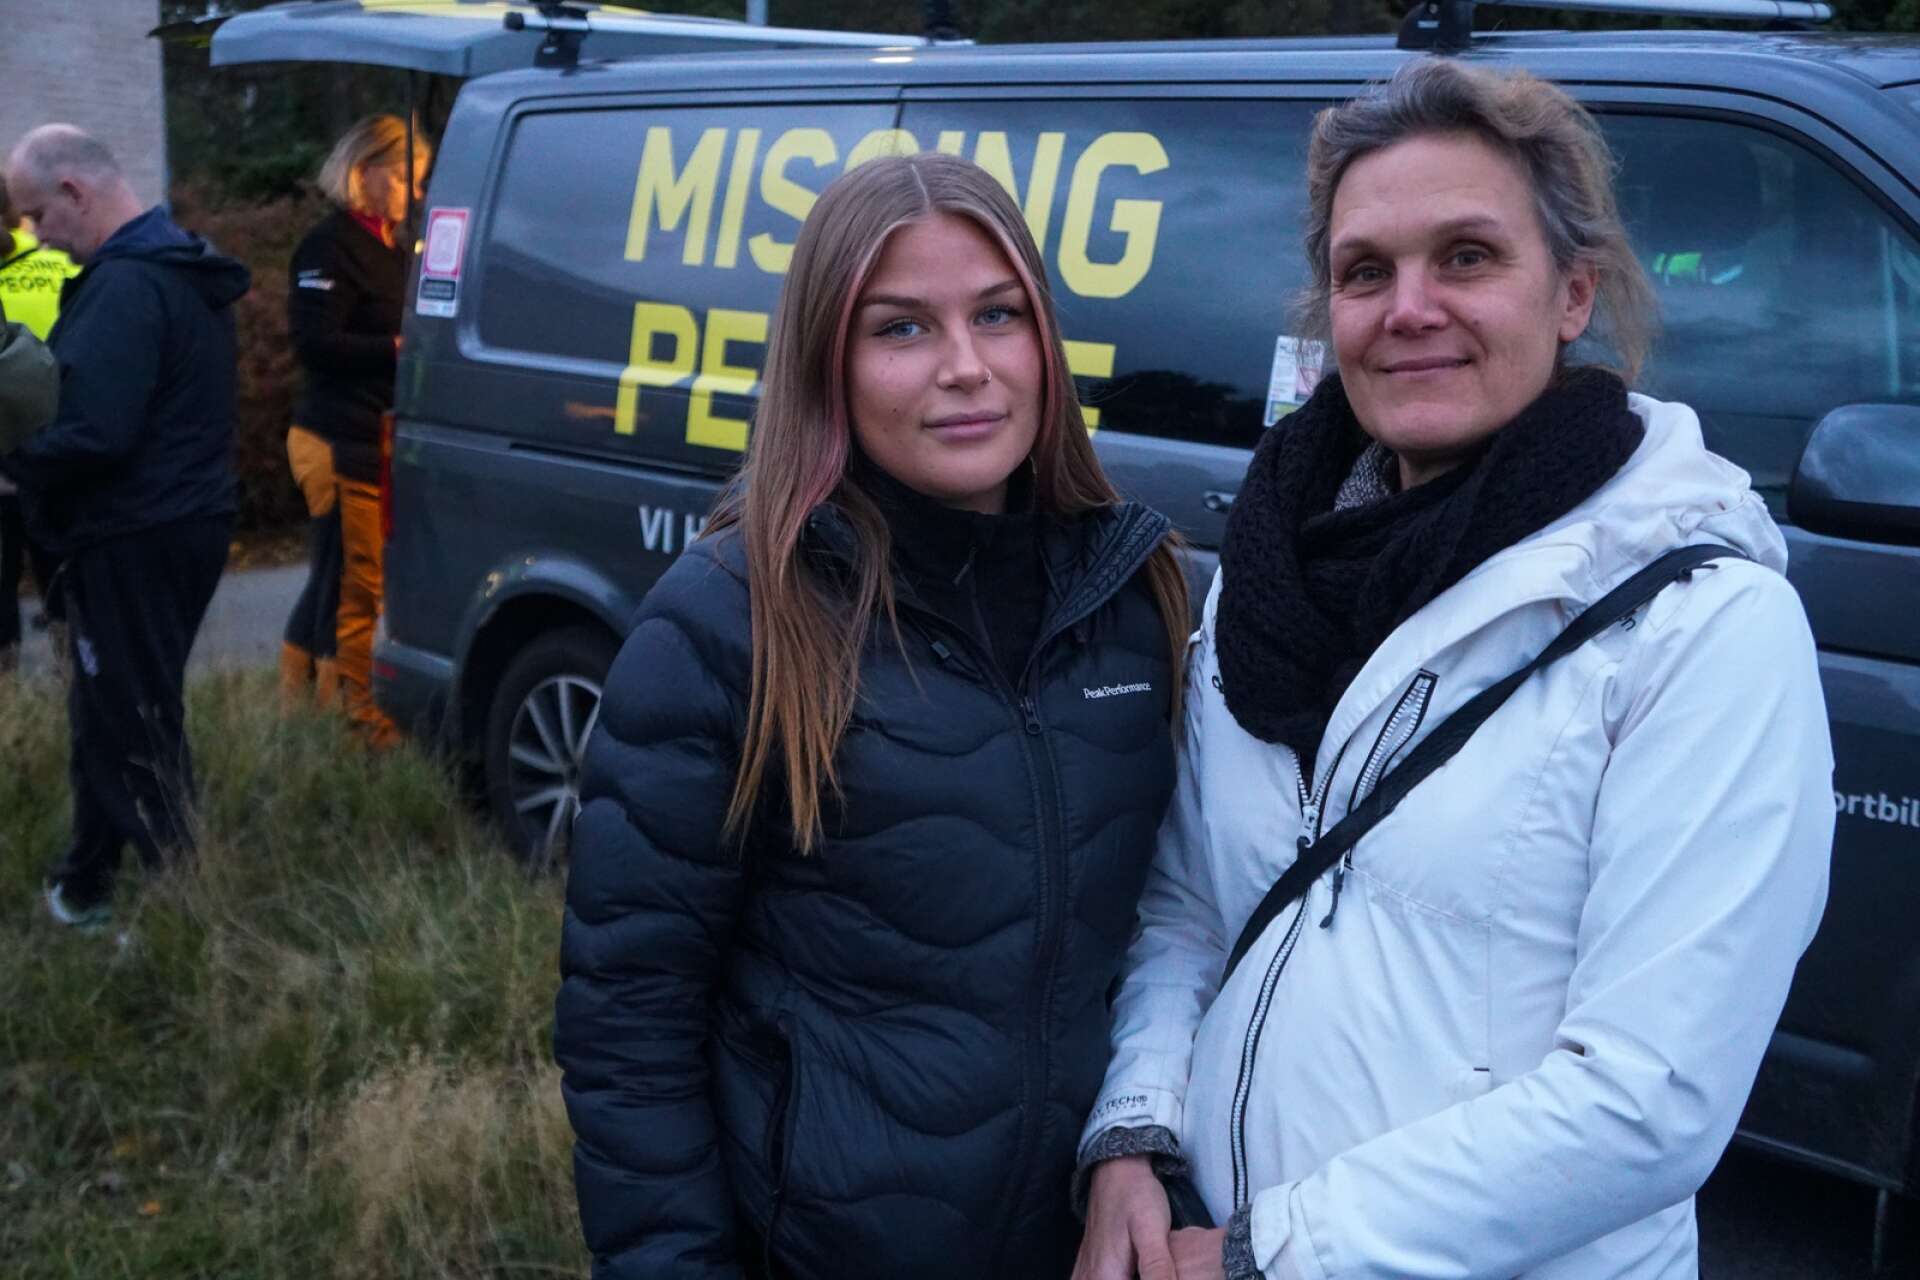 Tonårsflickan från Värmland har anmälts försvunnen i Göteborg. Missing people anordnar akutinsats för att hitta henne. Ines och Anna Hägerström är två av volontärerna.